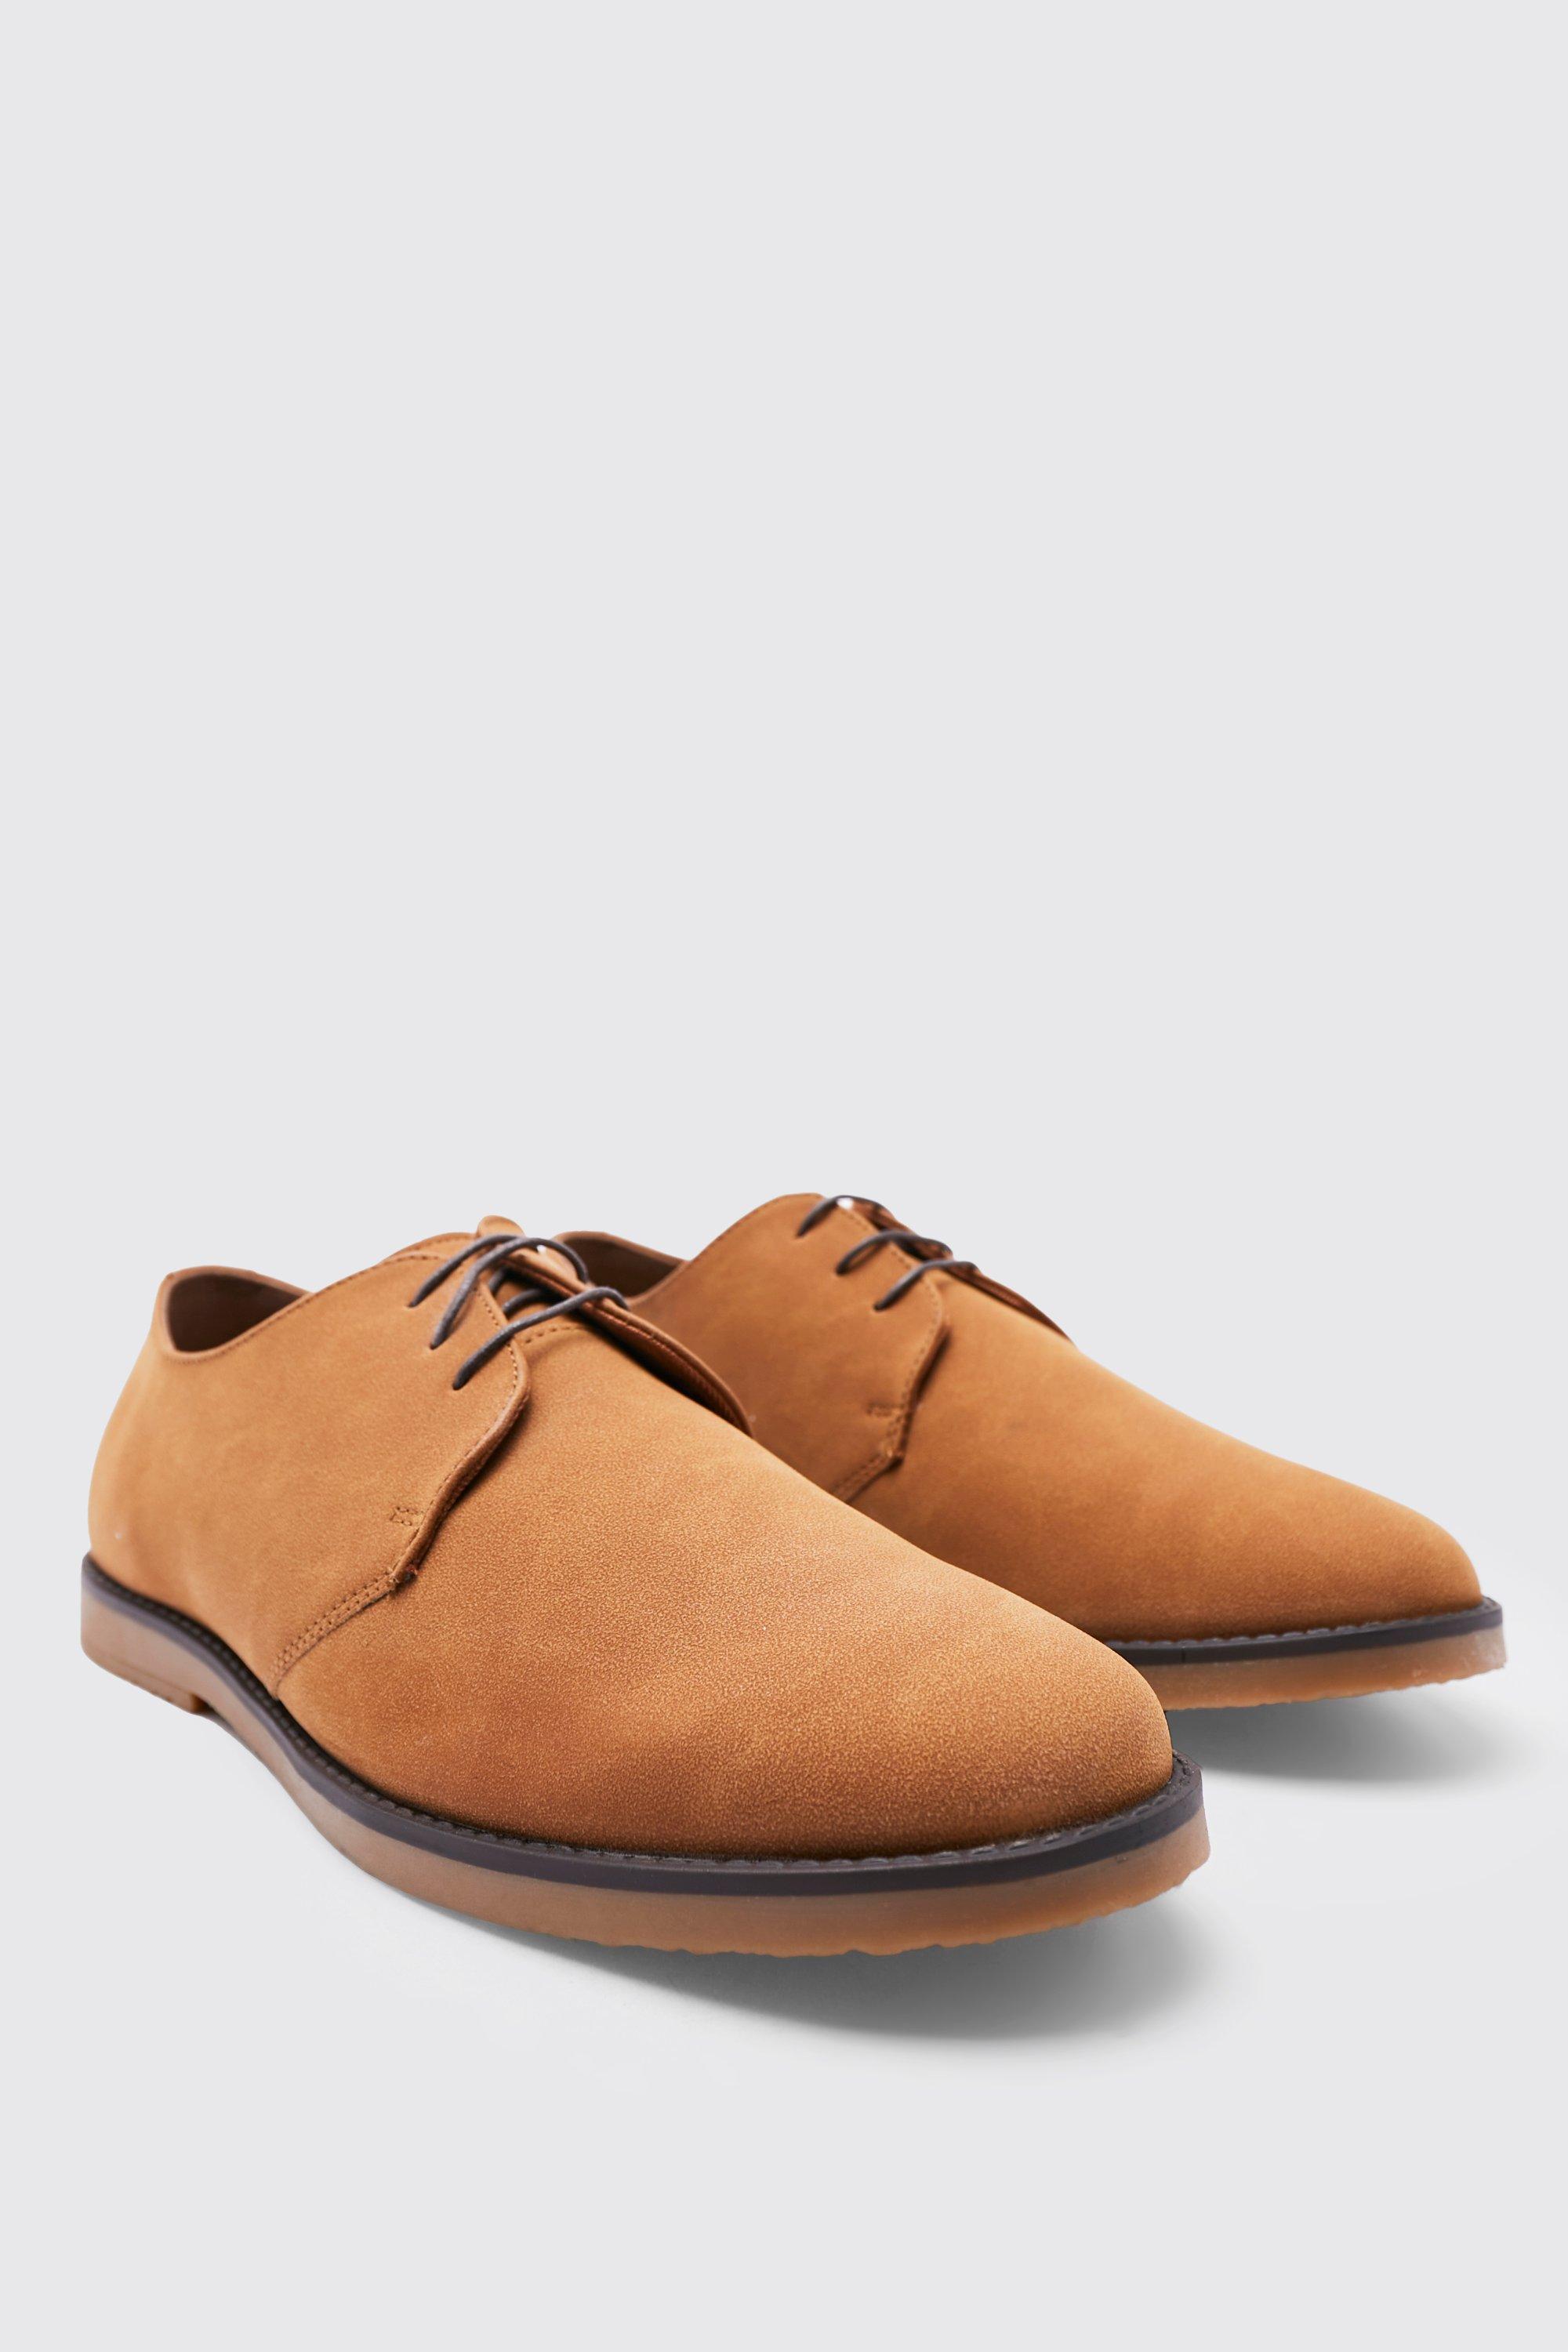 chaussures derby en faux daim homme - brun doré - 45, brun doré